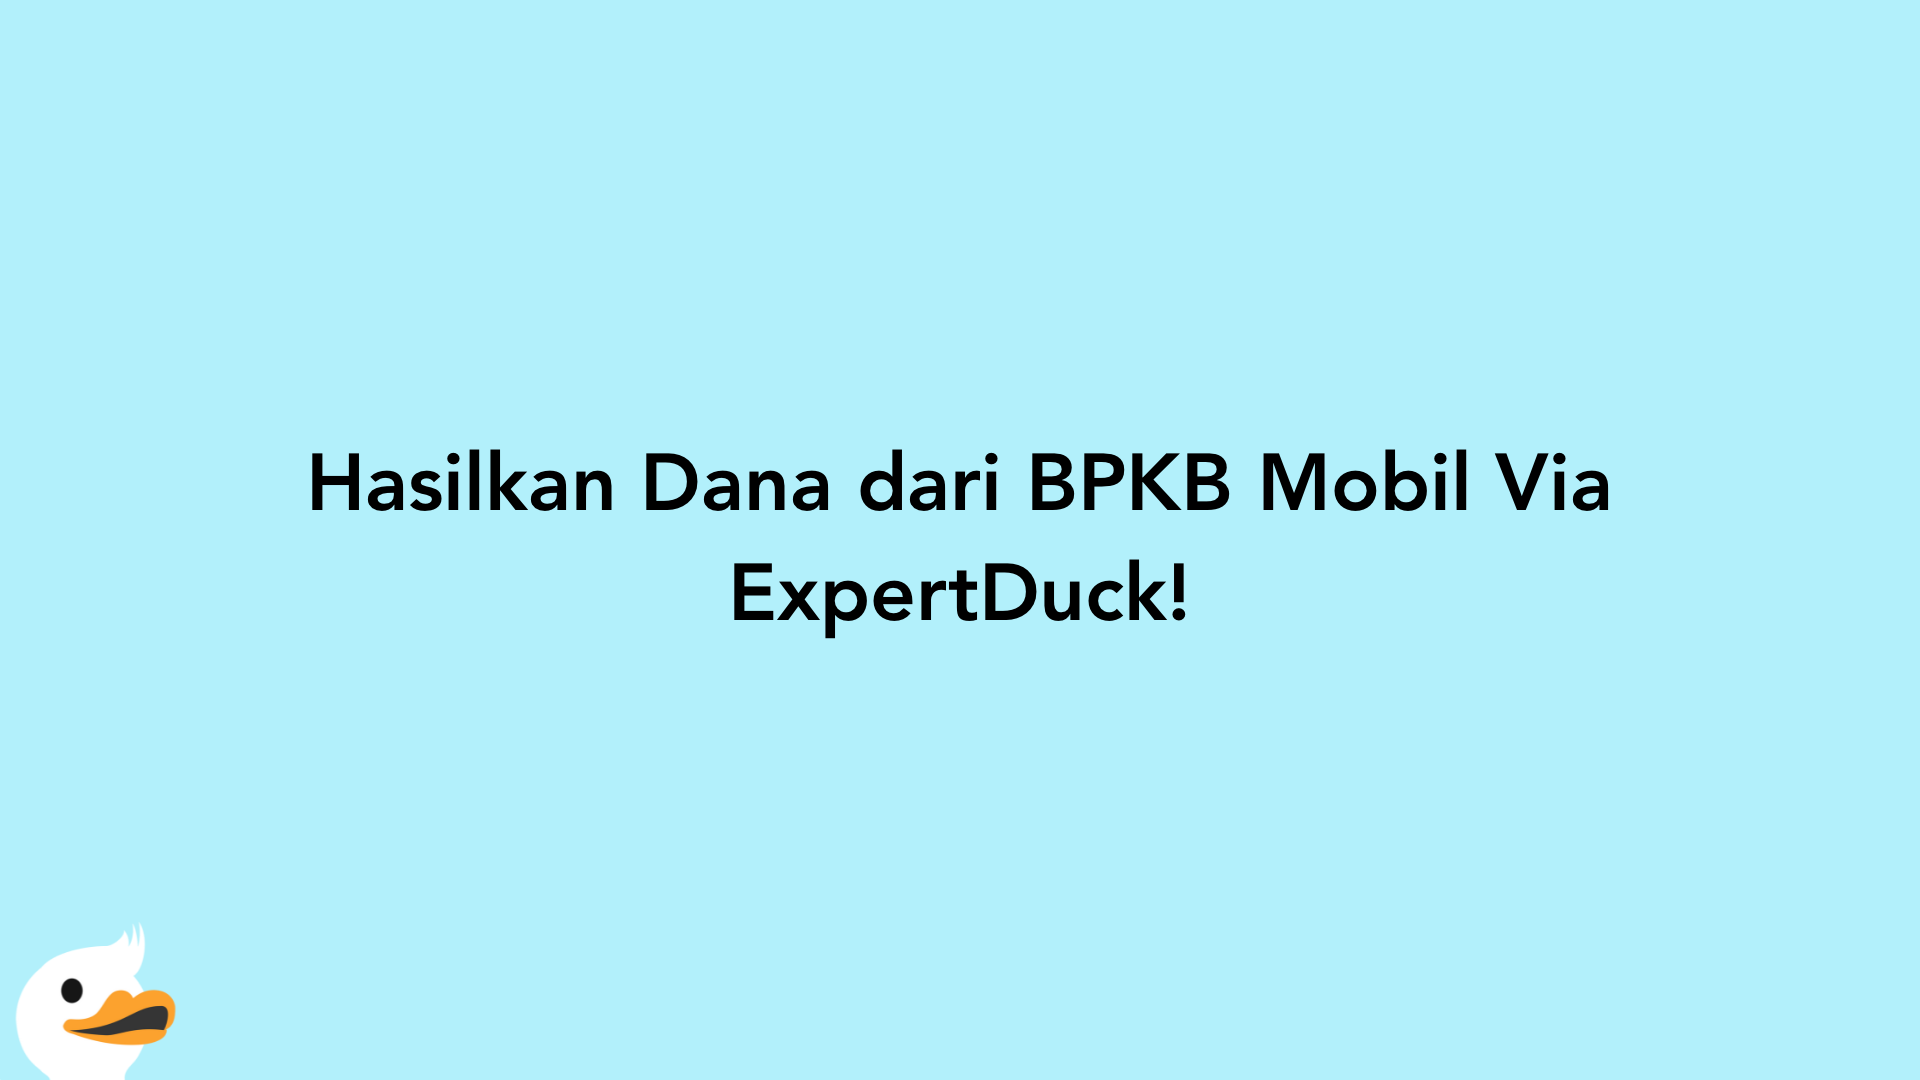 Hasilkan Dana dari BPKB Mobil Via ExpertDuck!